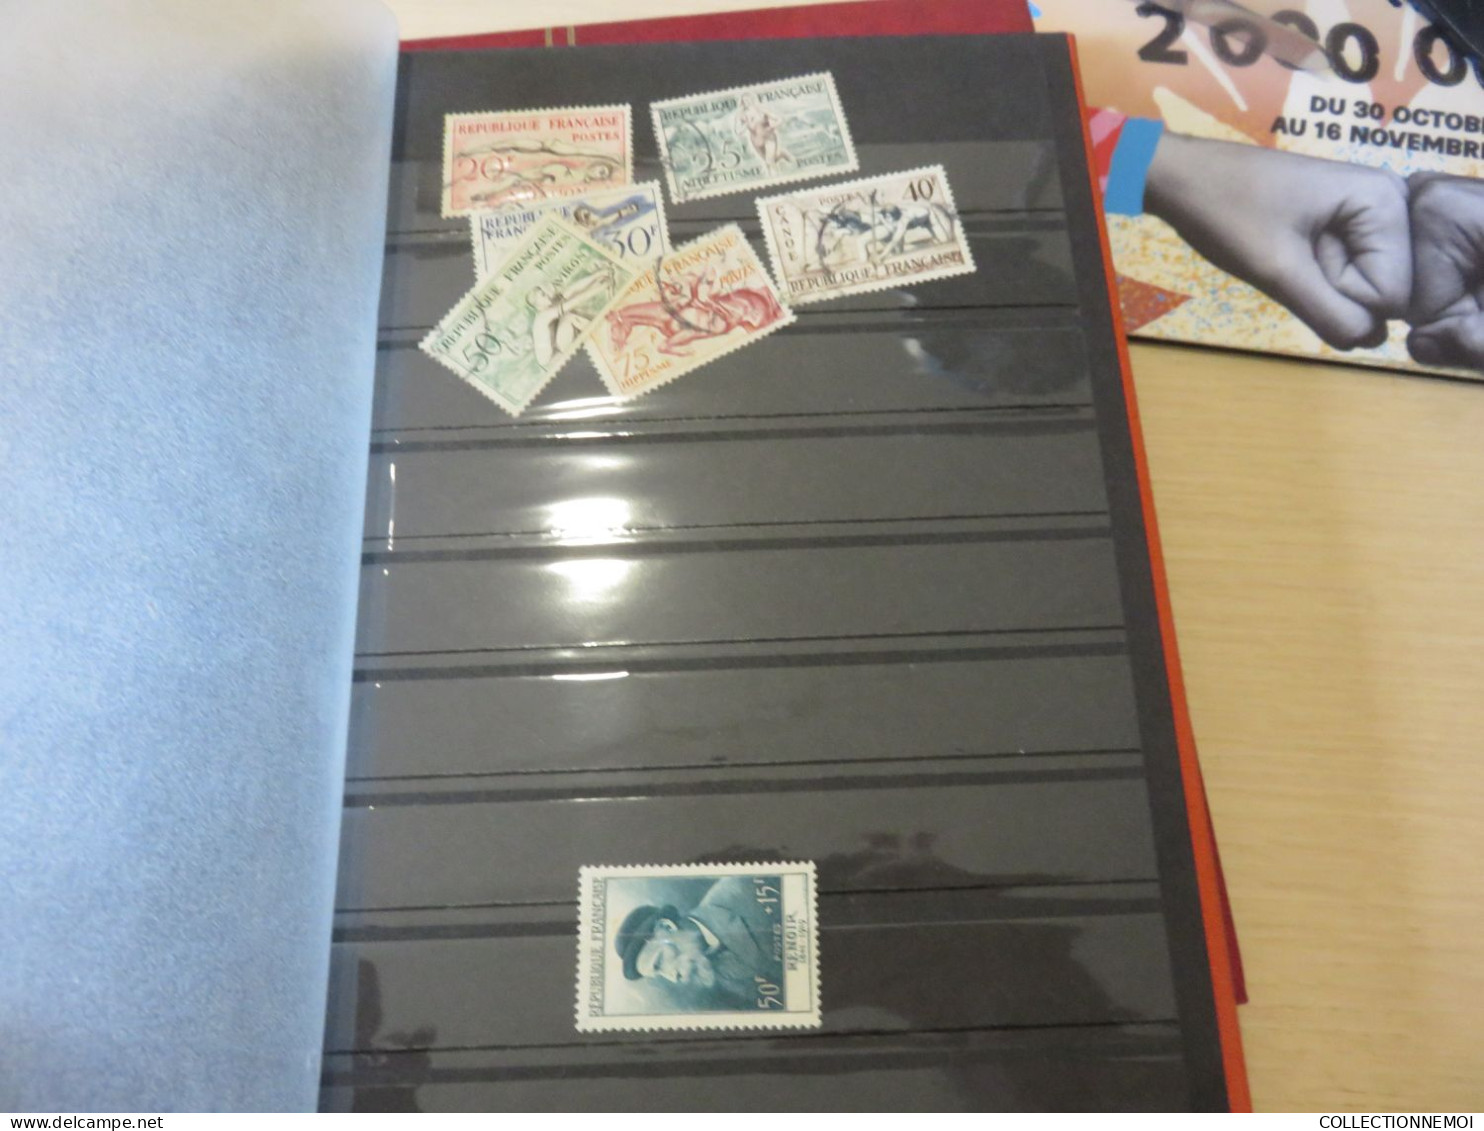 2 classeurs et 1 vracs d'envellopes de timbres de FRANCE sans valeurs ,,que pour pochettes ,,,vendu comme c'est